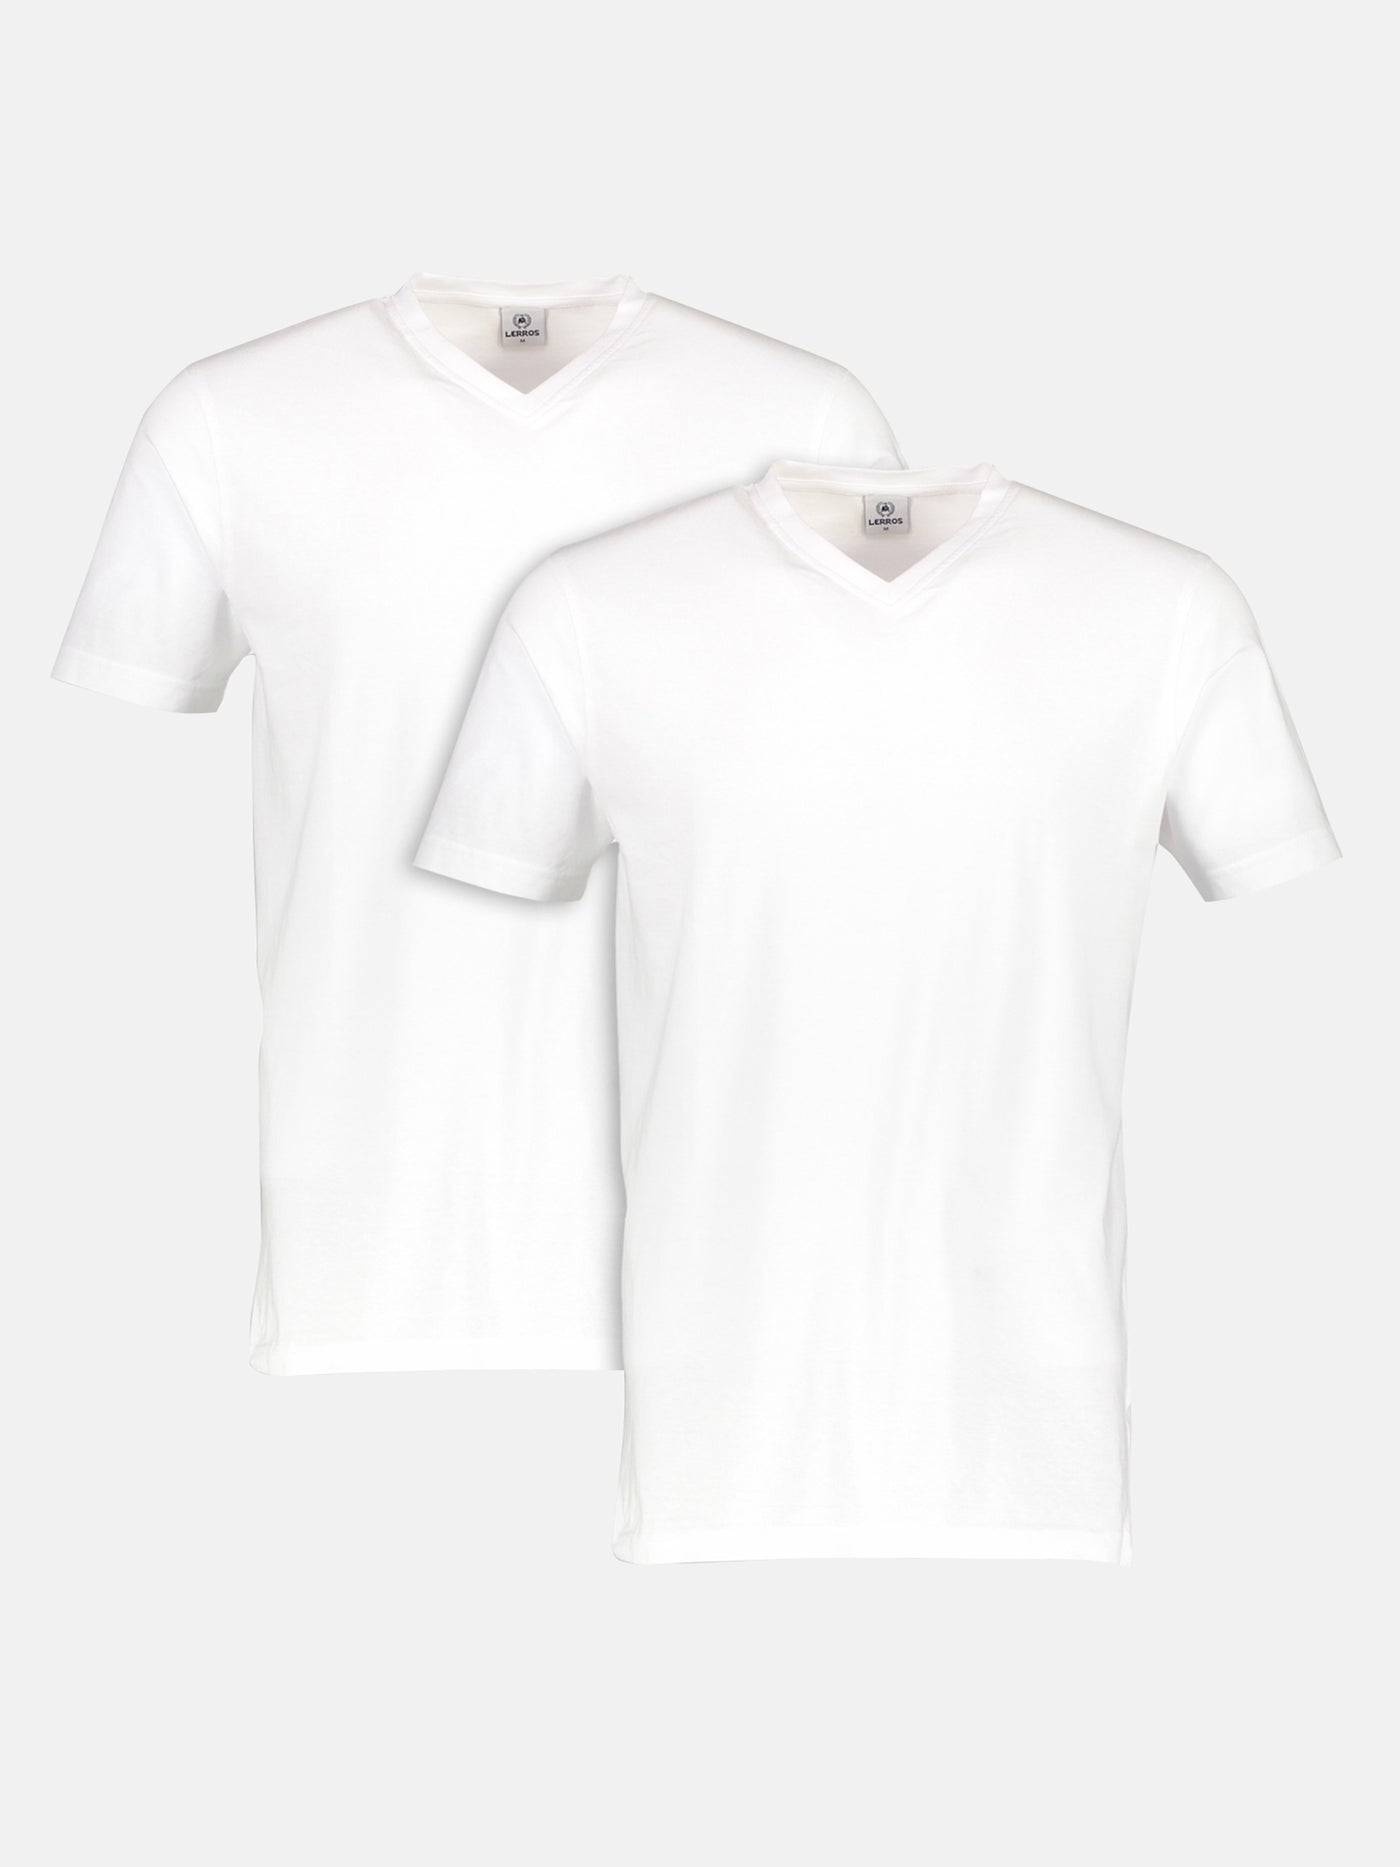 Doppelpack Herren T-Shirt, V-Neck in Premium Baumwollqualität